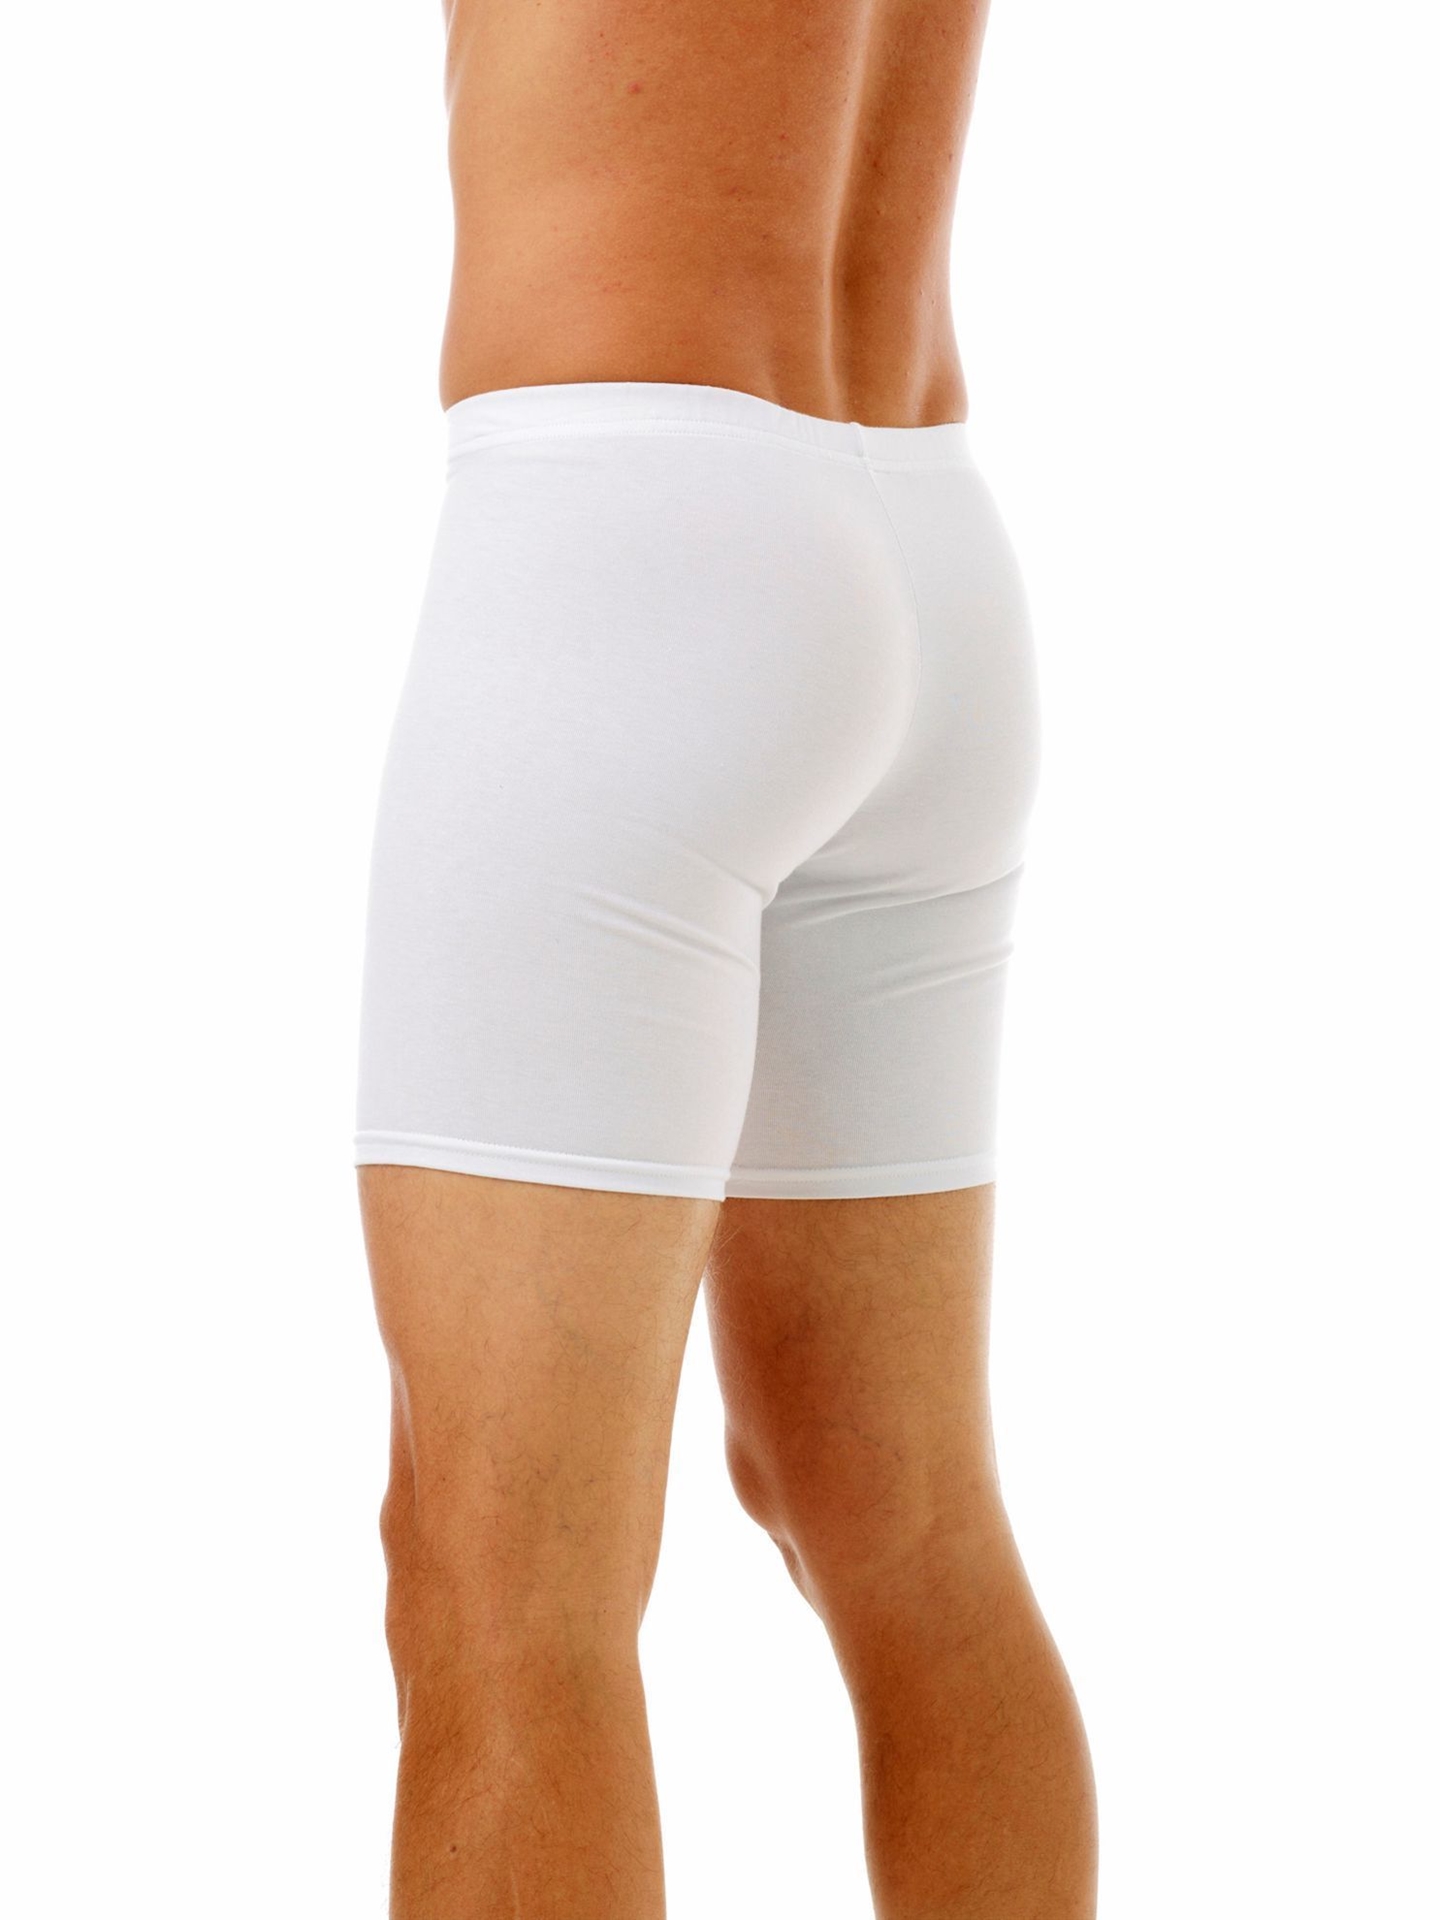 Underworks Men's Cotton Spandex Long Boxer Underwear White XS